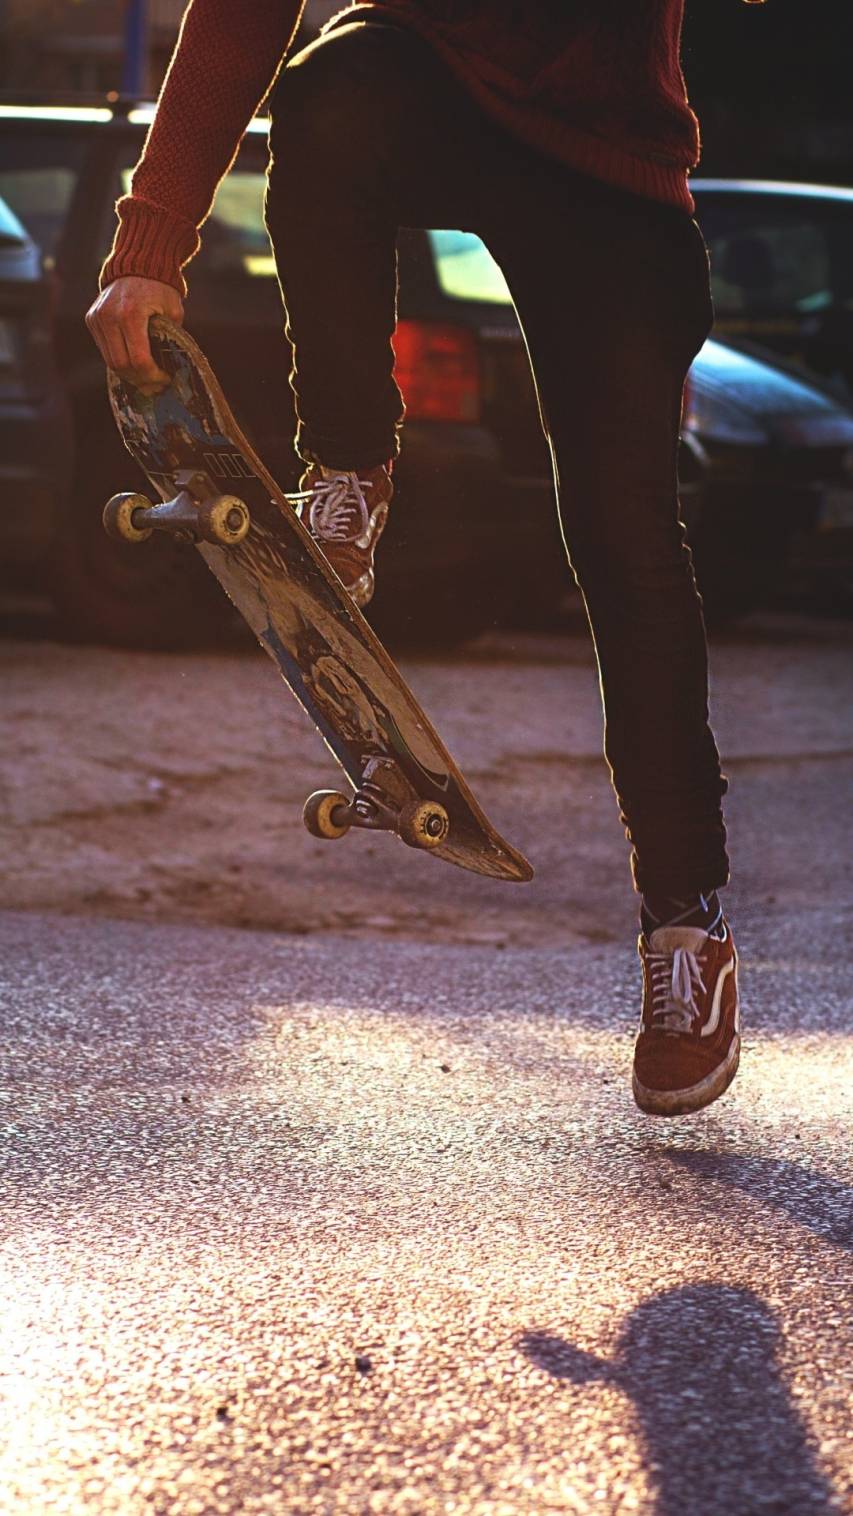 HD wallpaper skateboard  Wallpaper Flare